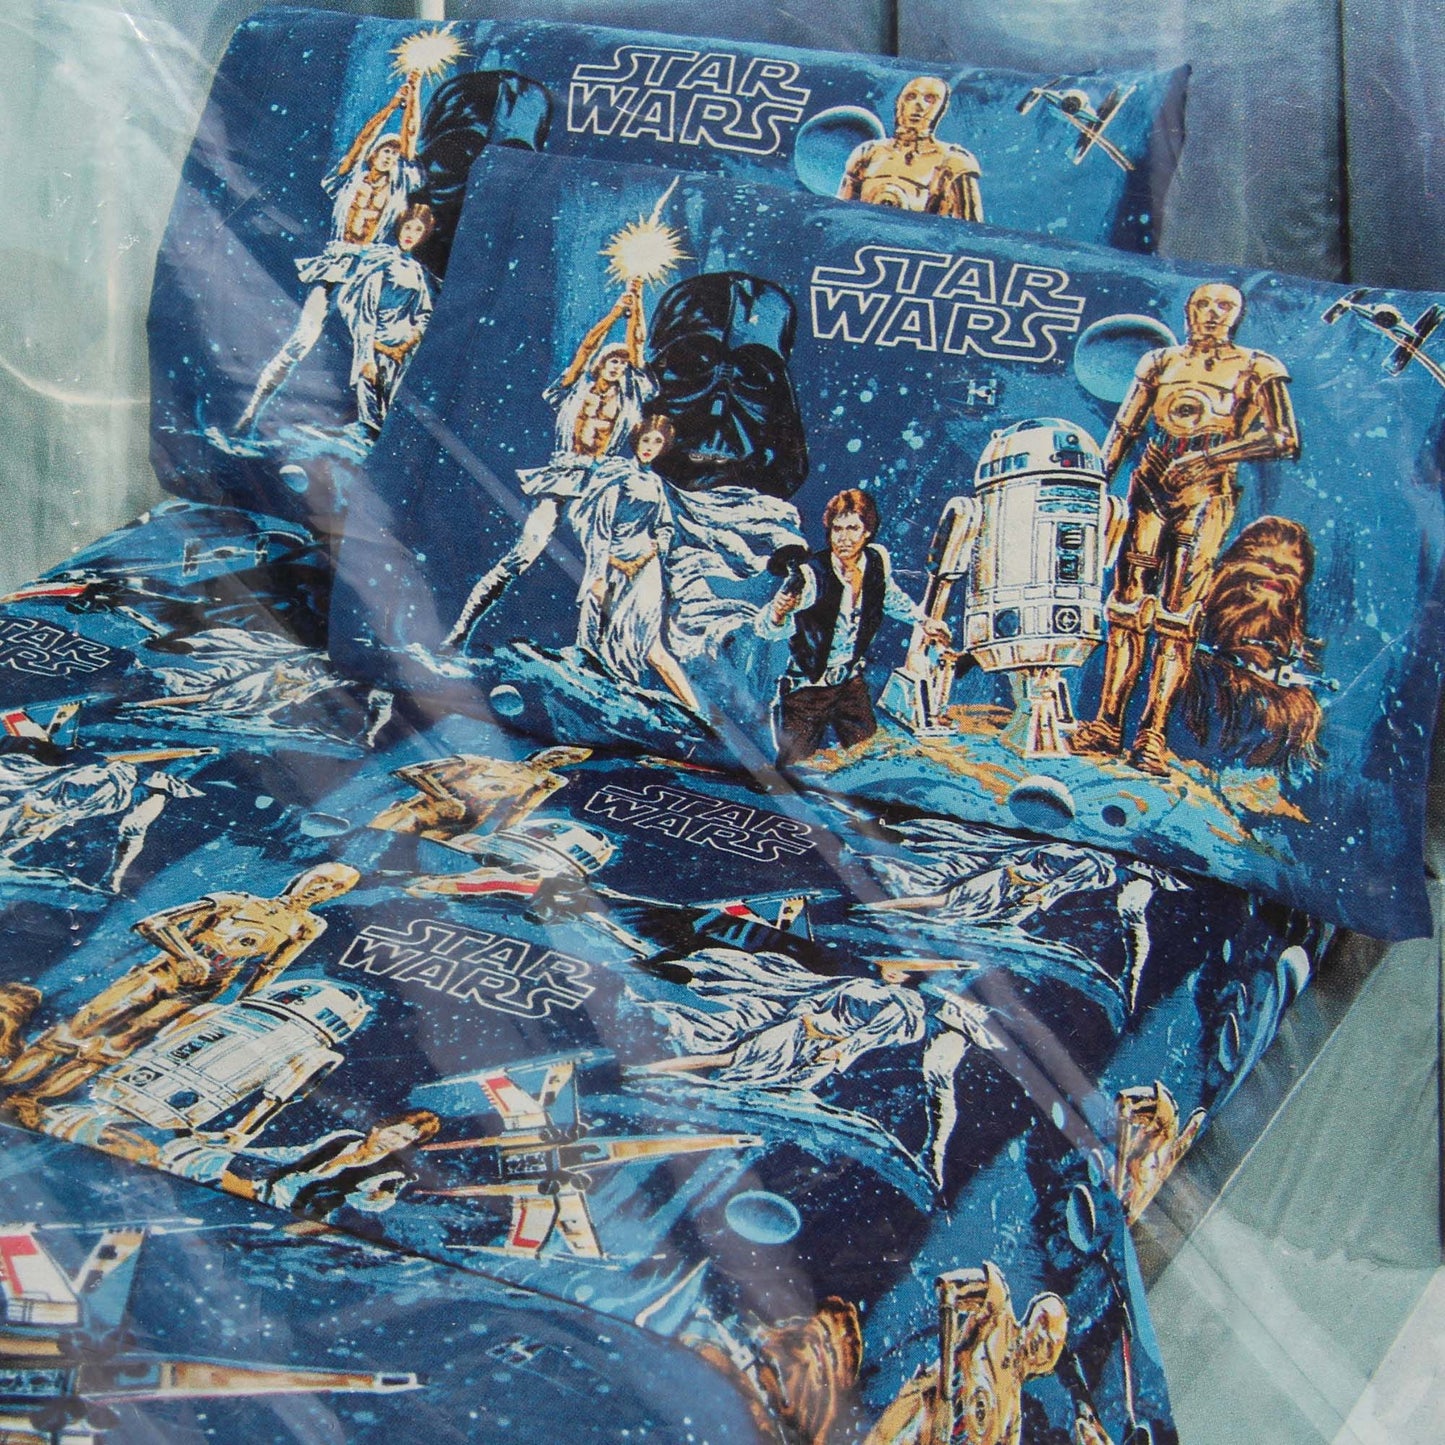 Vintage Star Wars Bed Sheets